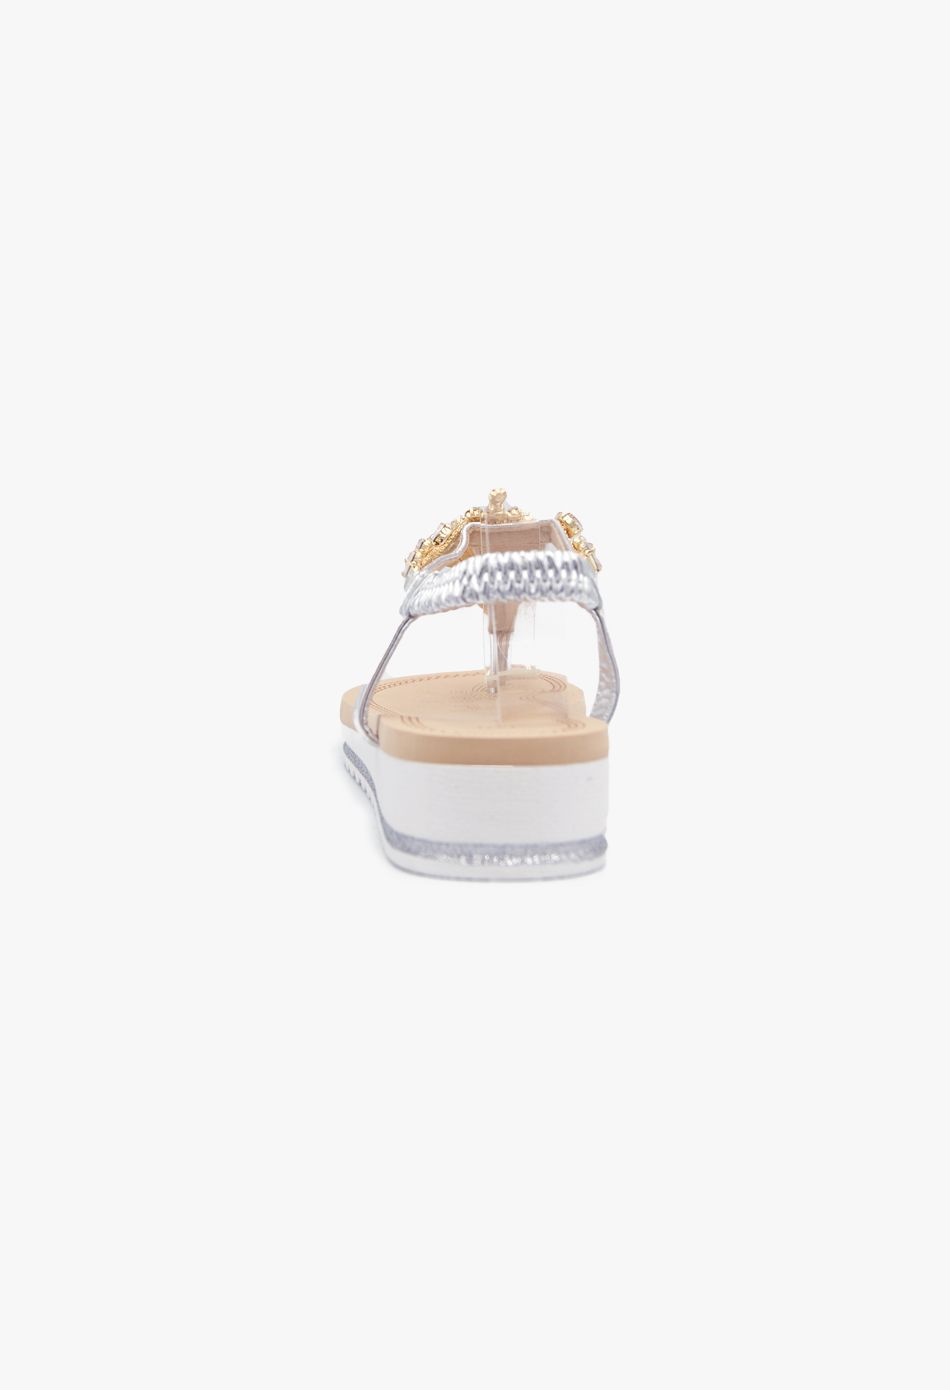 Γυναικεία Σανδάλια με strass και Πέτρες Ασημί / N75-silver Ανοιχτά Παπούτσια joya.gr